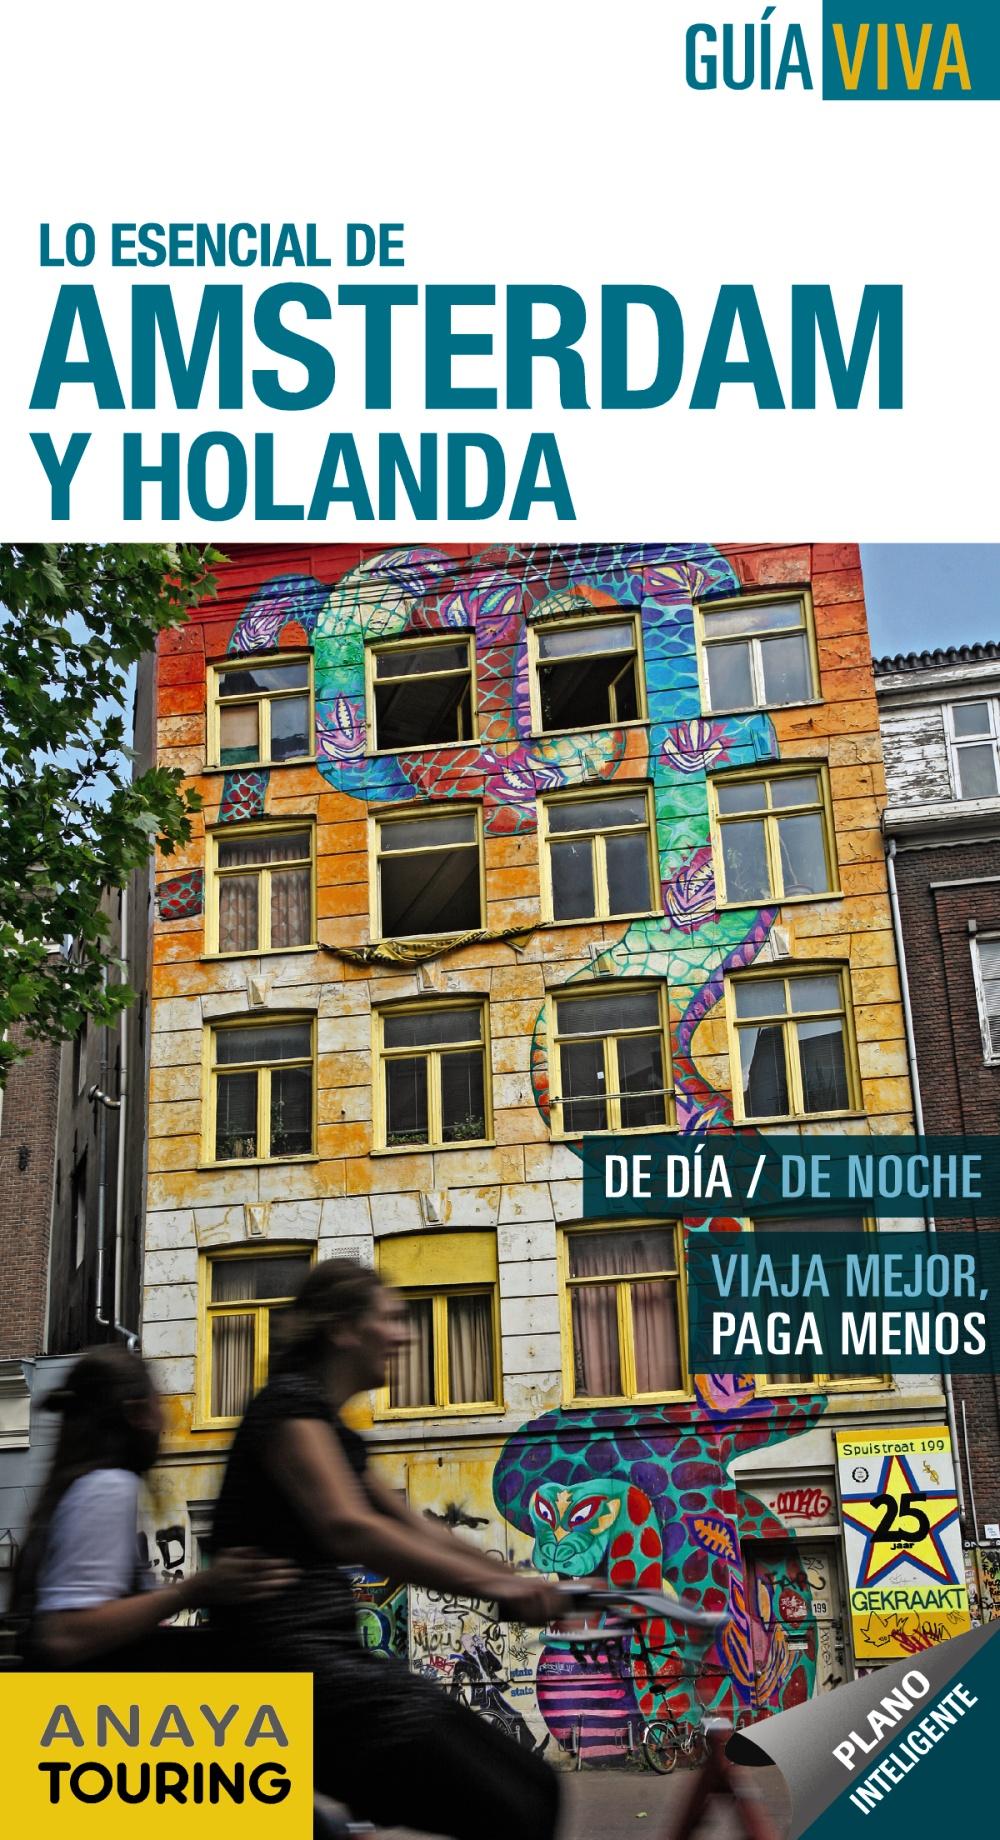 Foto Lo esencial de amsterdam y holanda 2012 guia viva anaya touring (en papel)